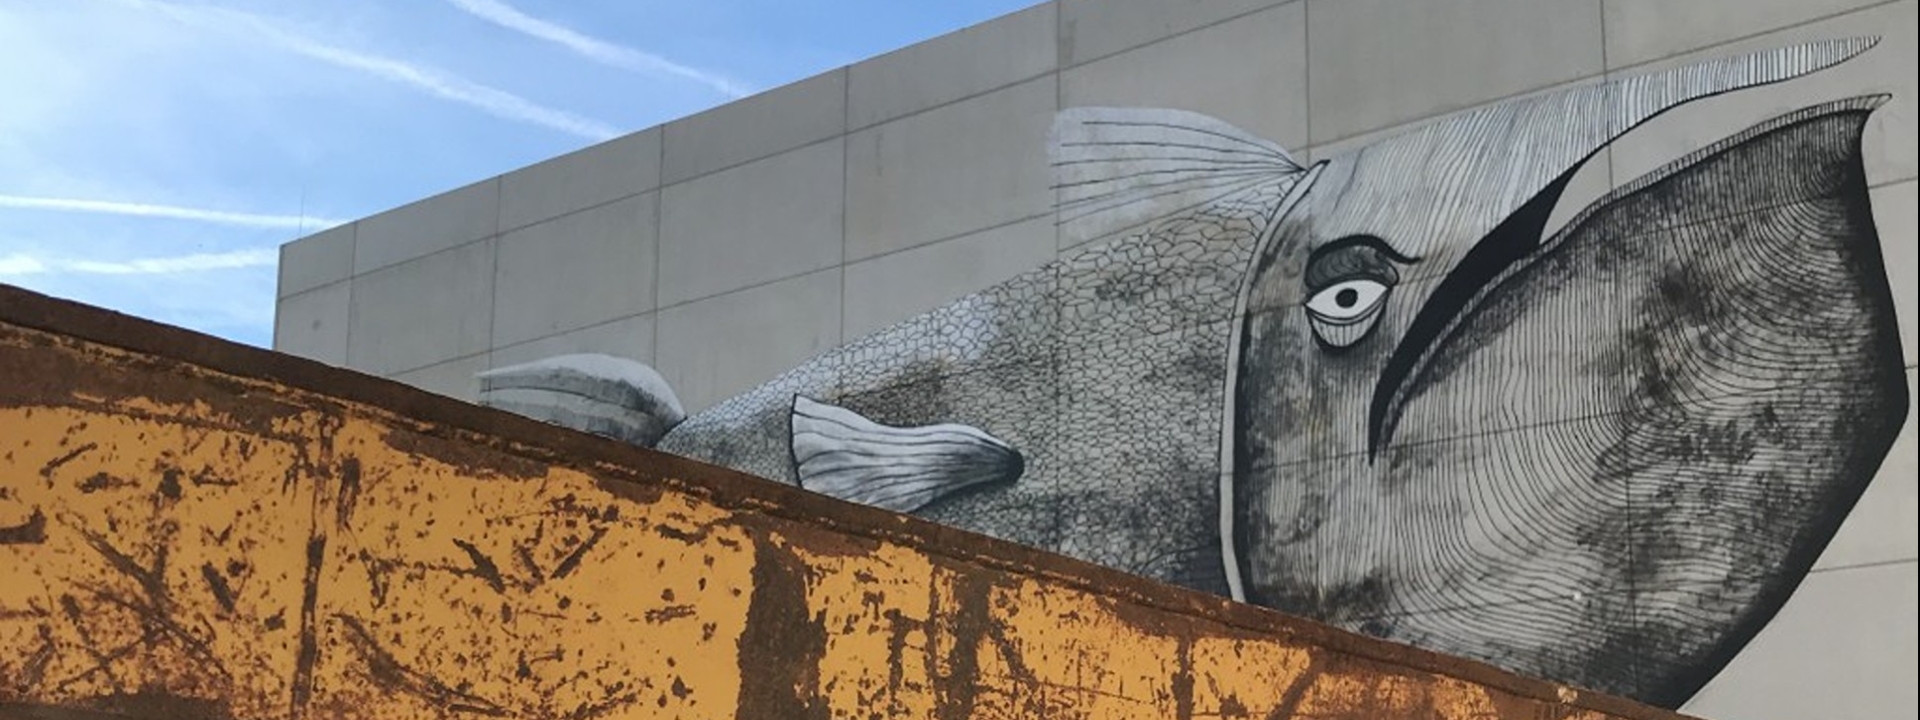 Foto: Im Vordergrund eine Ecke eines verrosteten Containers, dahinter ein Teil des großen Muralwalks, das einen Wal zeigt, der gleichzeitig ein Zeppelin ist.